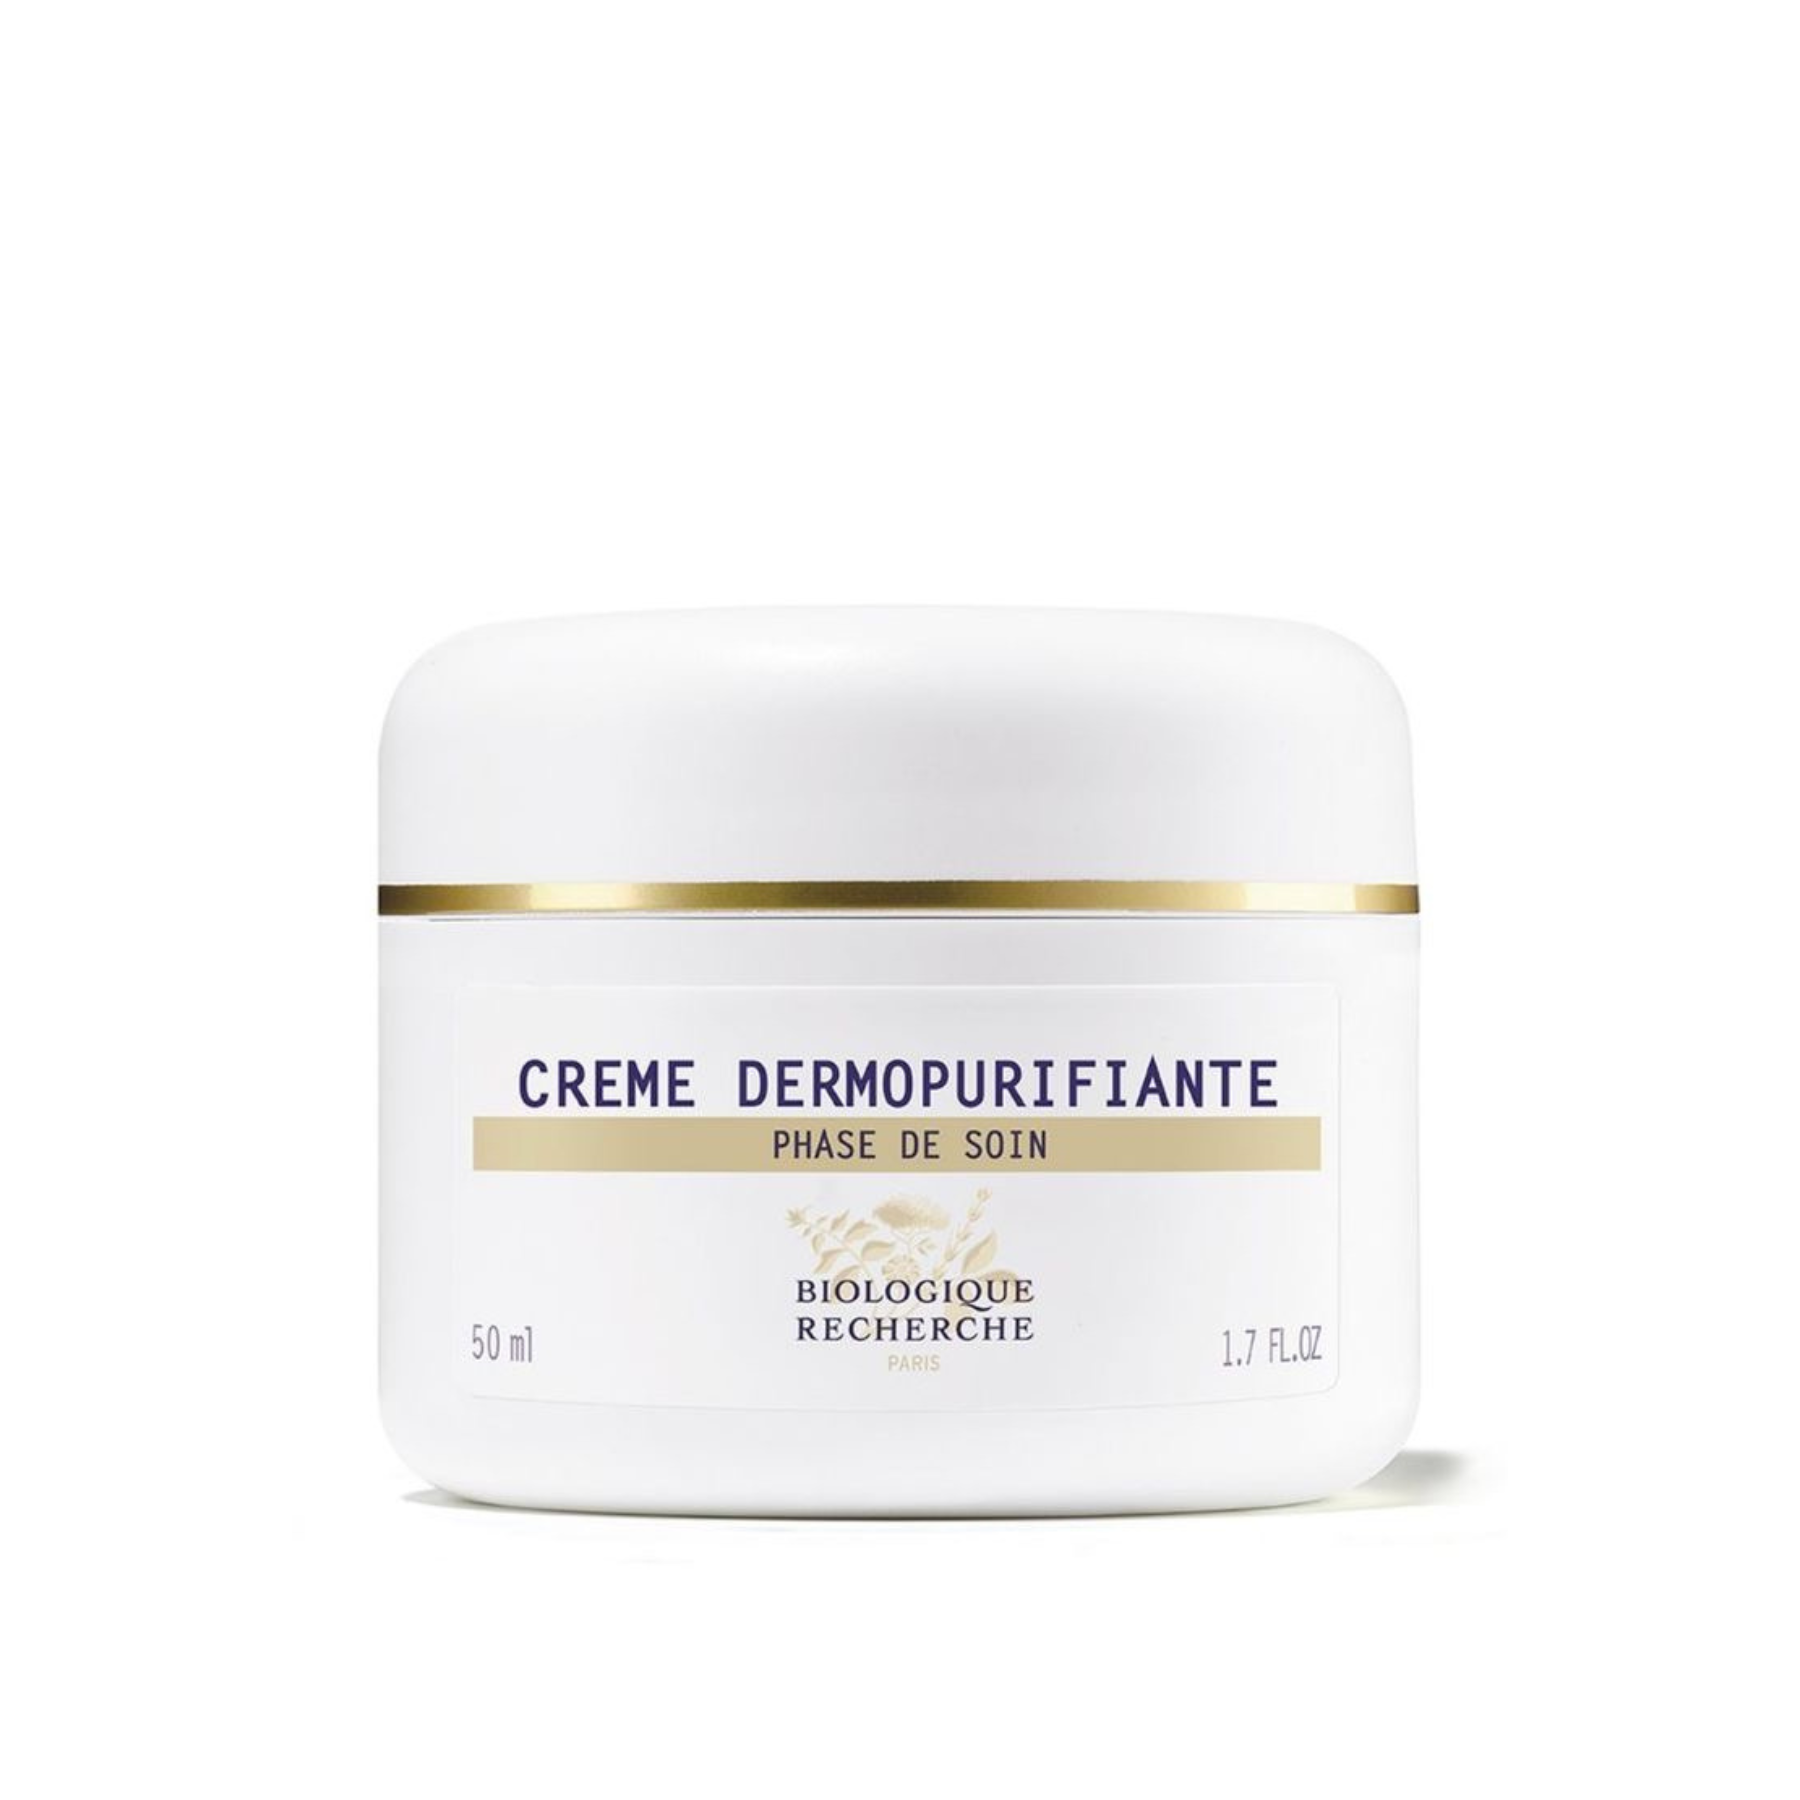 Очищающий крем для лица Crème Dermopurifiante Biologique Recherche, 50мл